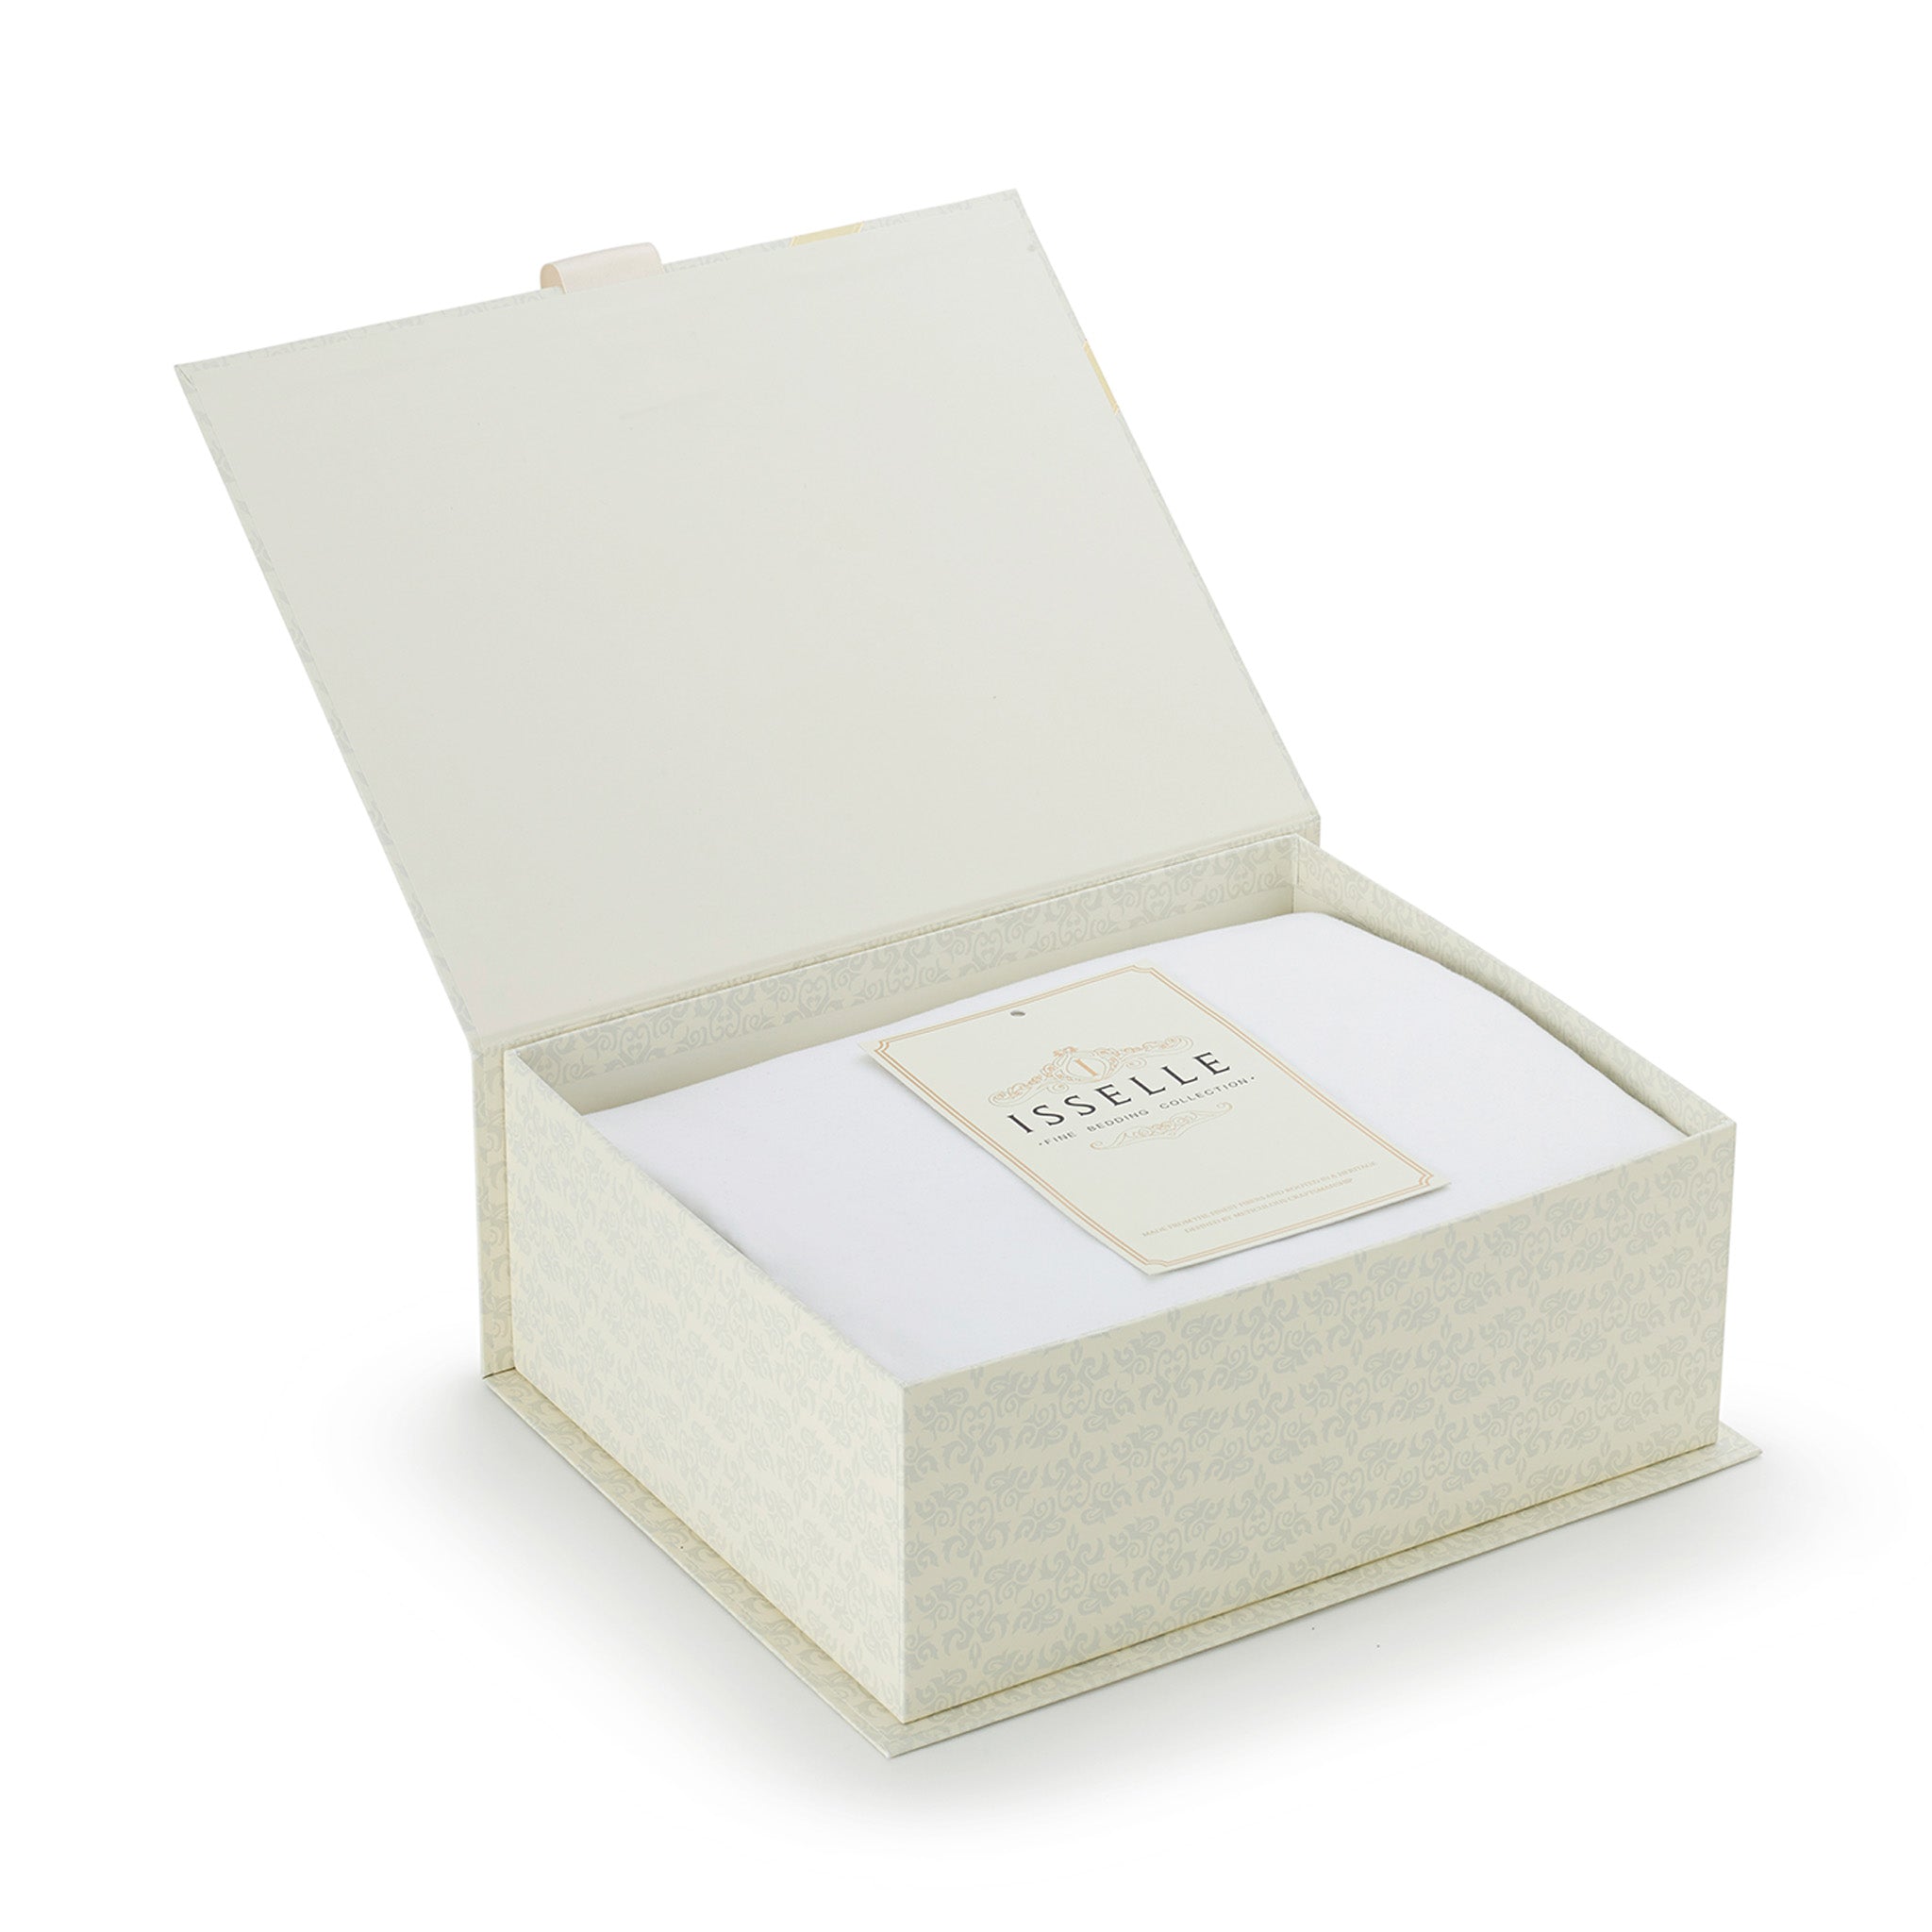 Isselle Auden Bed sheet set & duvet cover | White Ivory